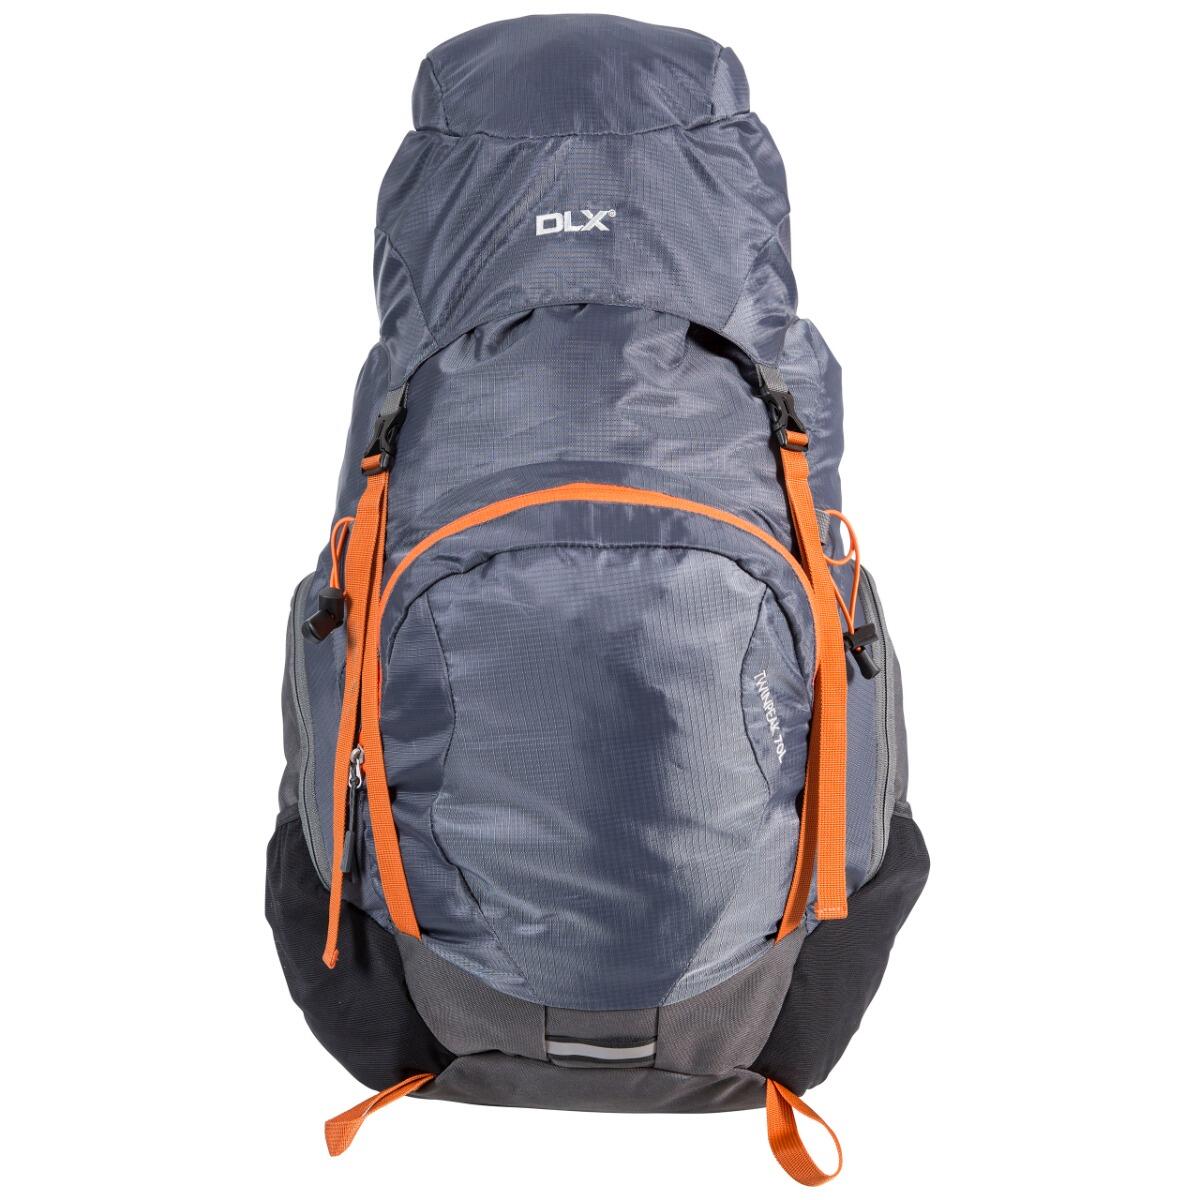 75L Rucksack Hiking Backpack with Hi Visibility Raincover Twinpeak 1/5